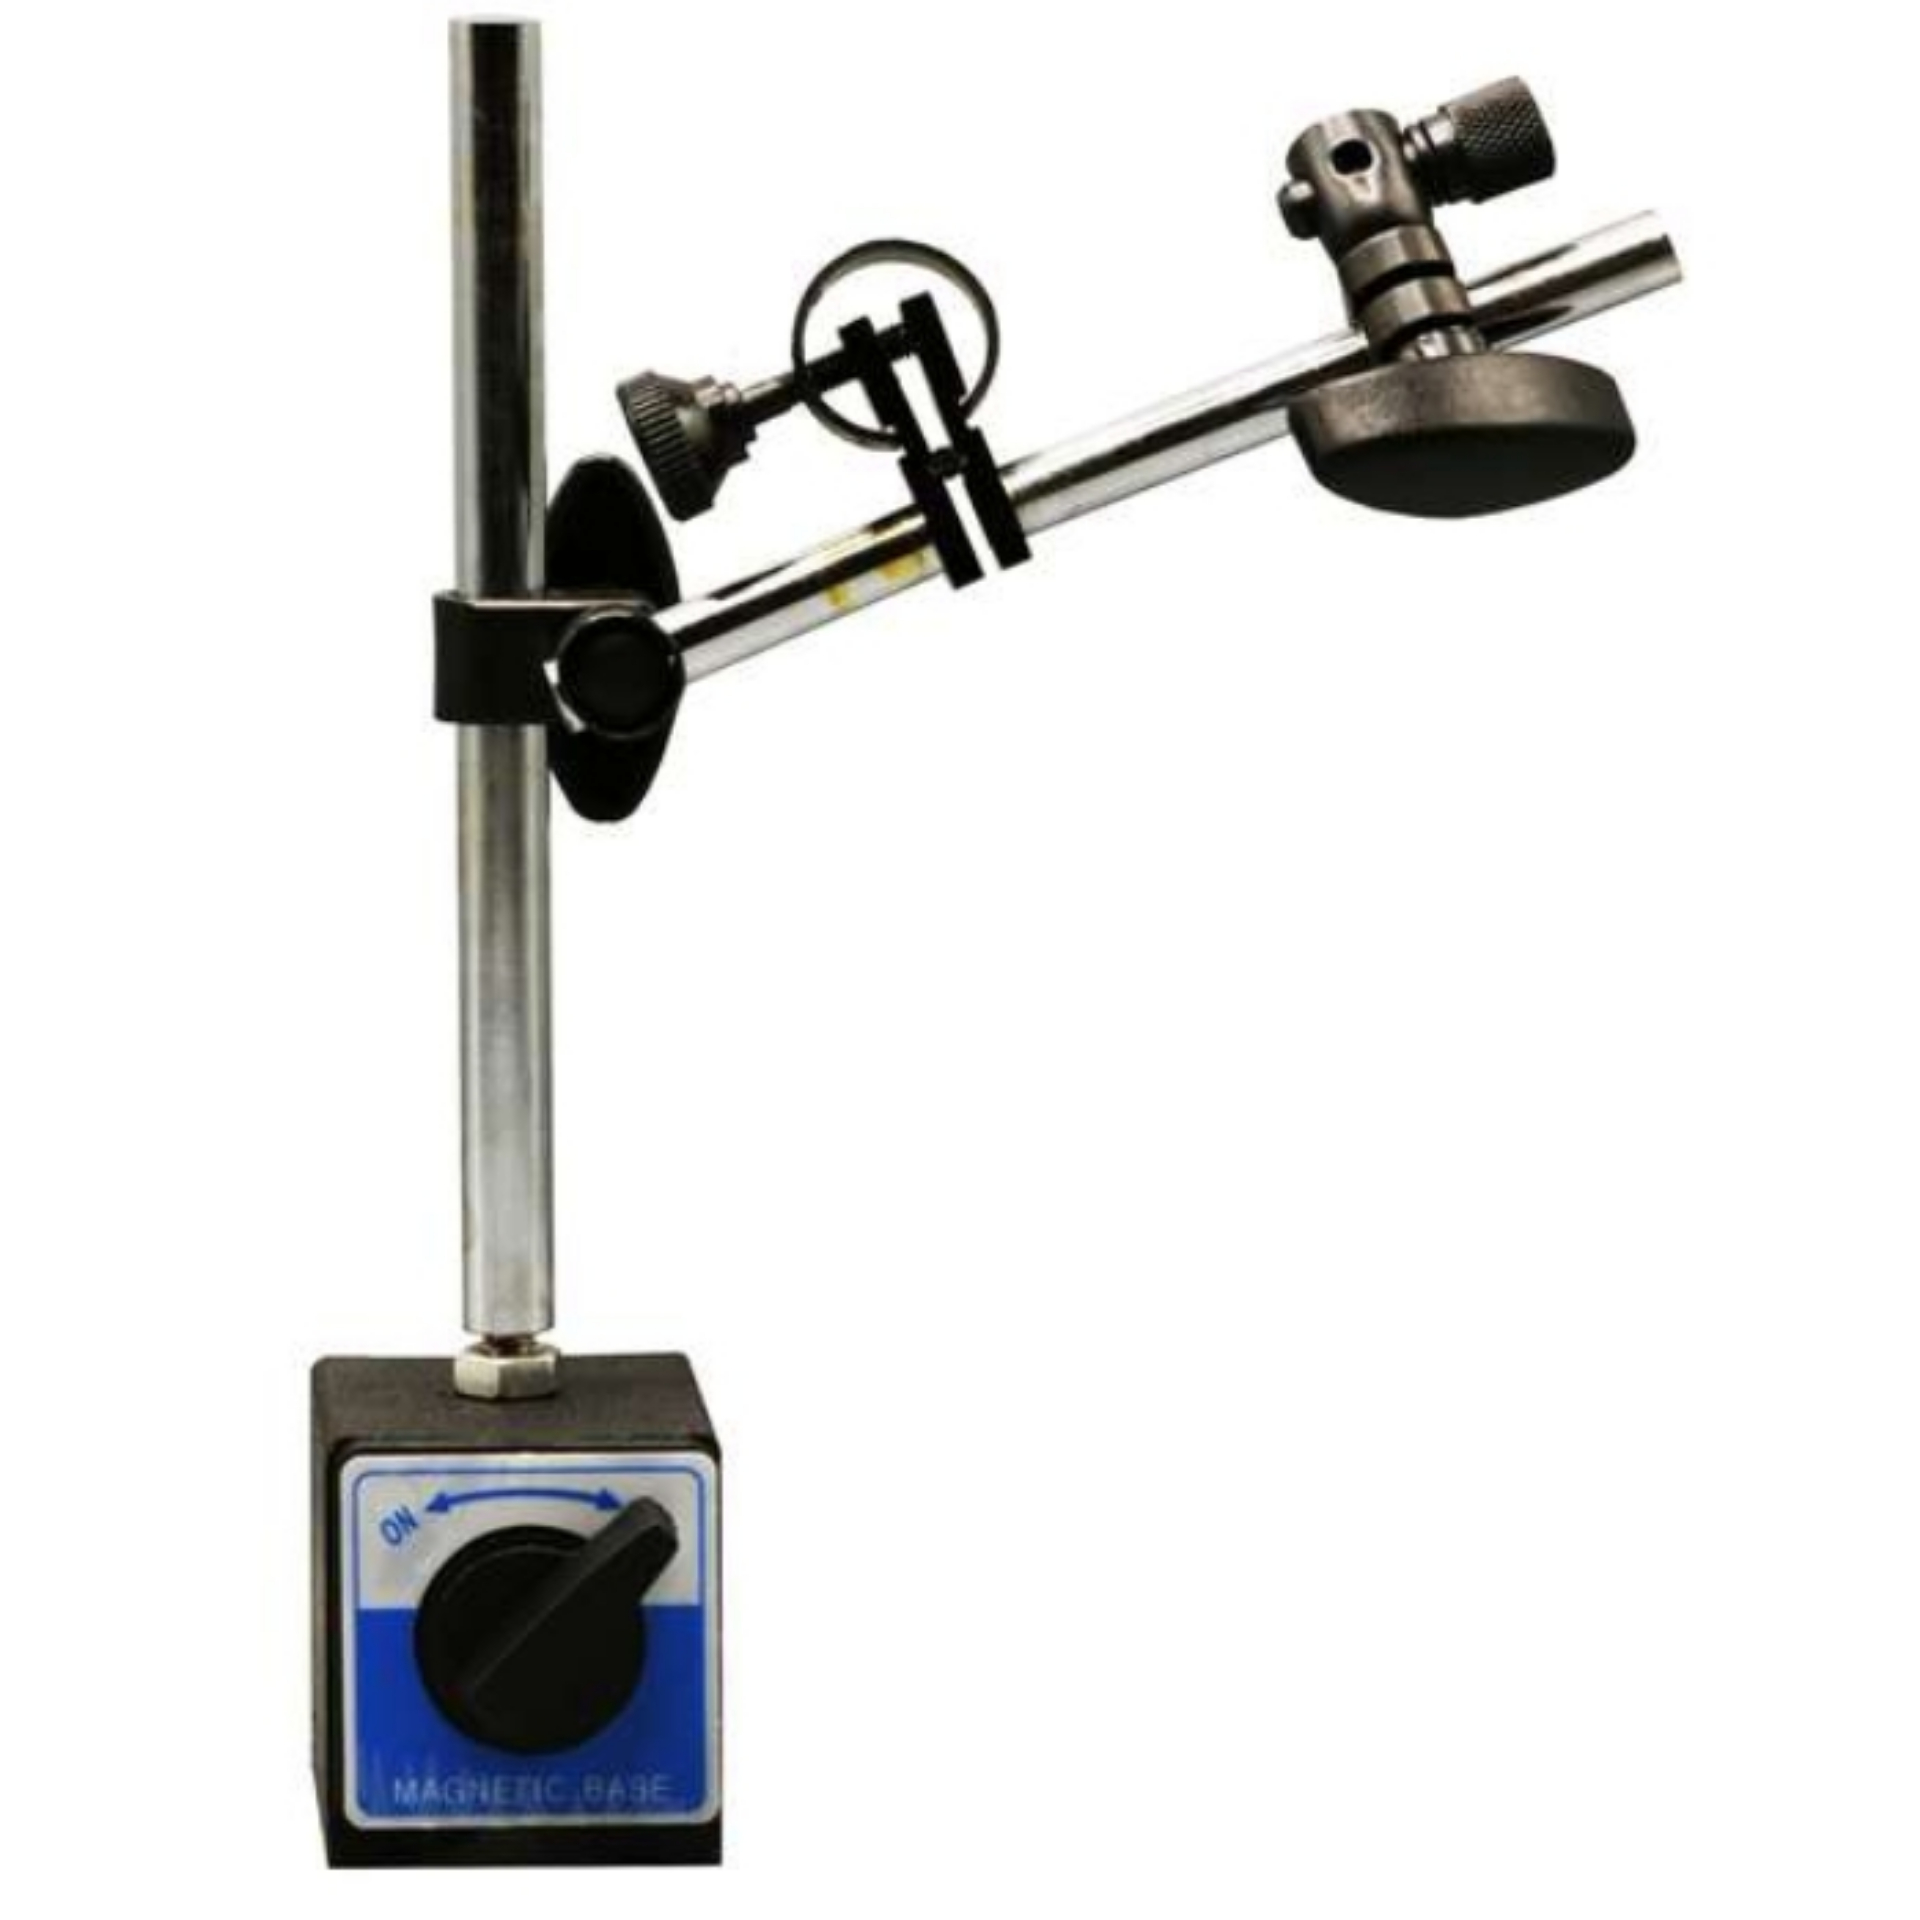 نکته خرید - قیمت روز پایه مغناطیسی ساعت اندیکاتور مدل RISTD77 خرید